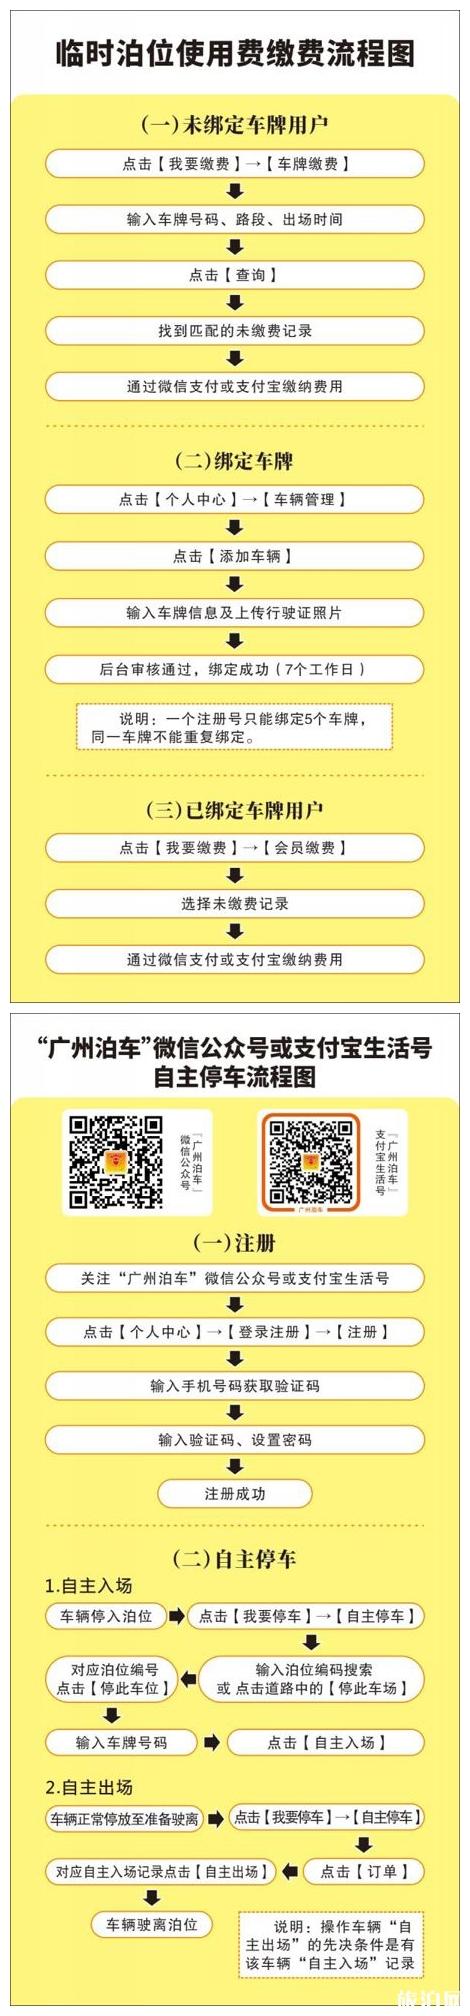 2020广州中心六区全天准停路段及费用 市民停车和线上缴费操作流程